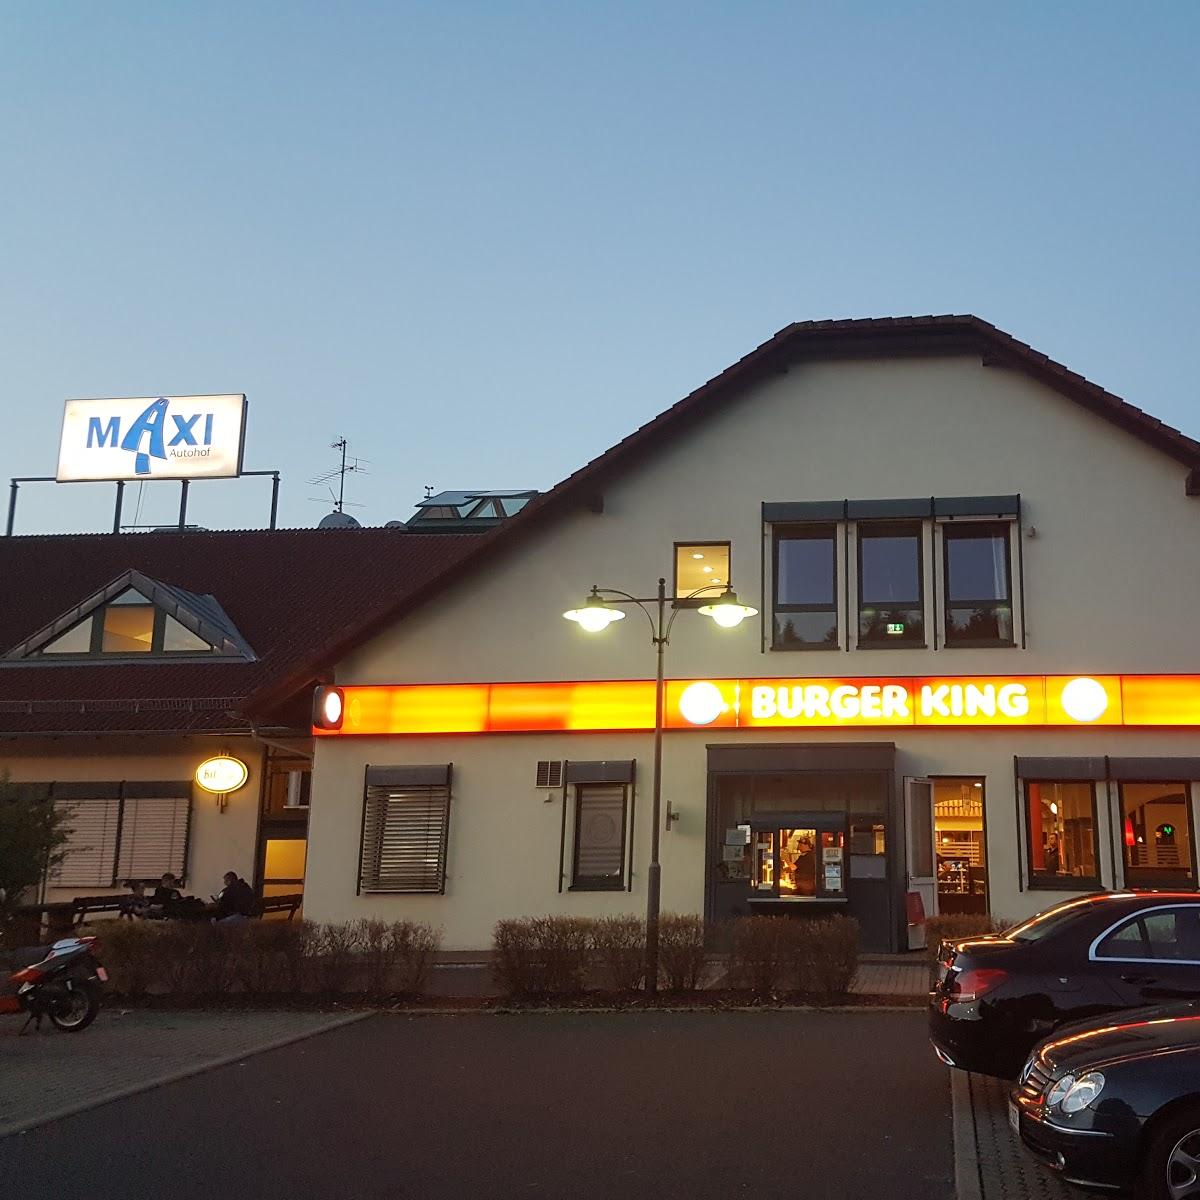 Restaurant "BURGER KING®" in Wertheim